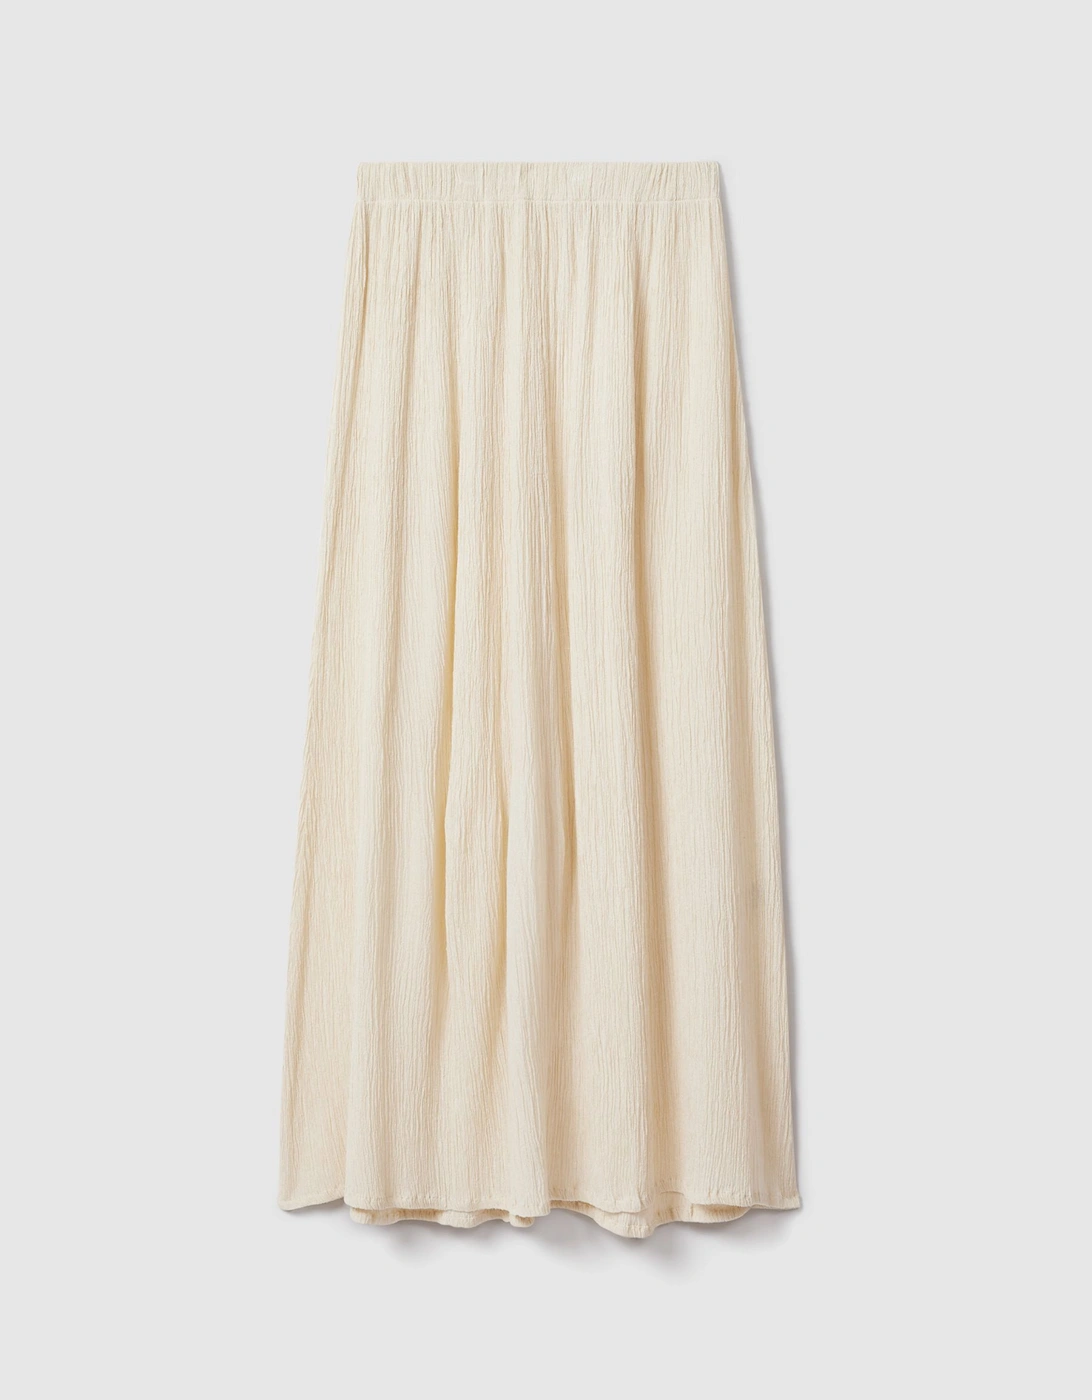 Savannah Morrow Cream Silk Blend Maxi Skirt, 2 of 1